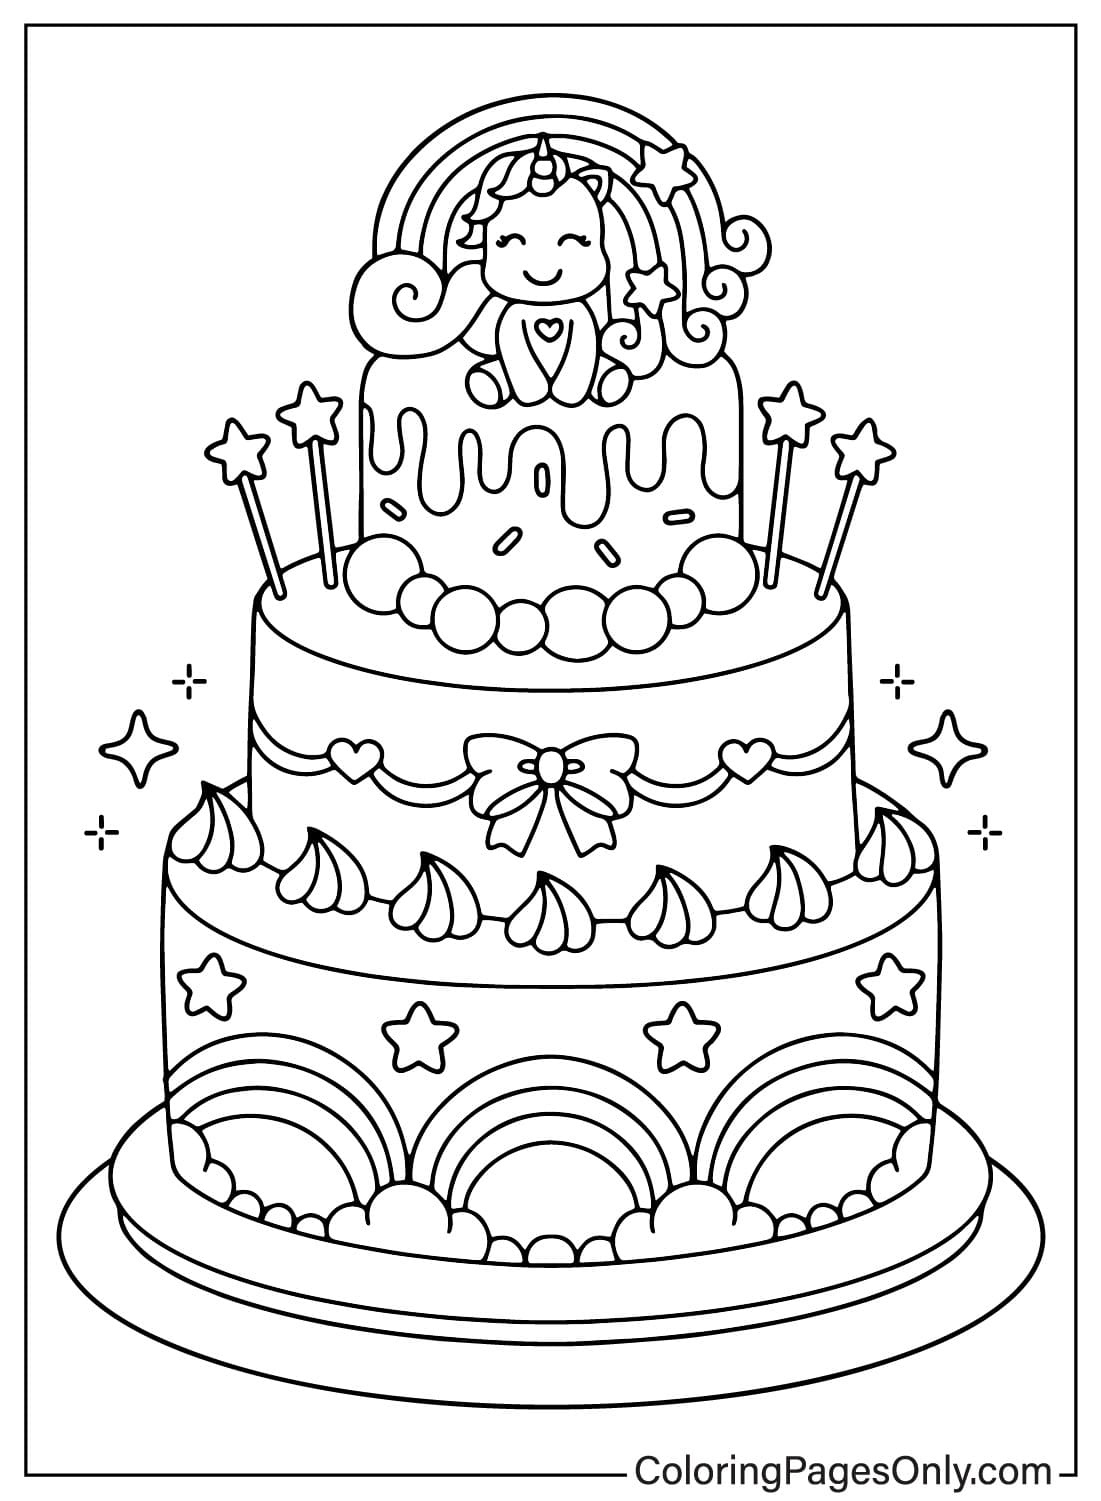 Цветная страница торта ко дню рождения из торта ко дню рождения